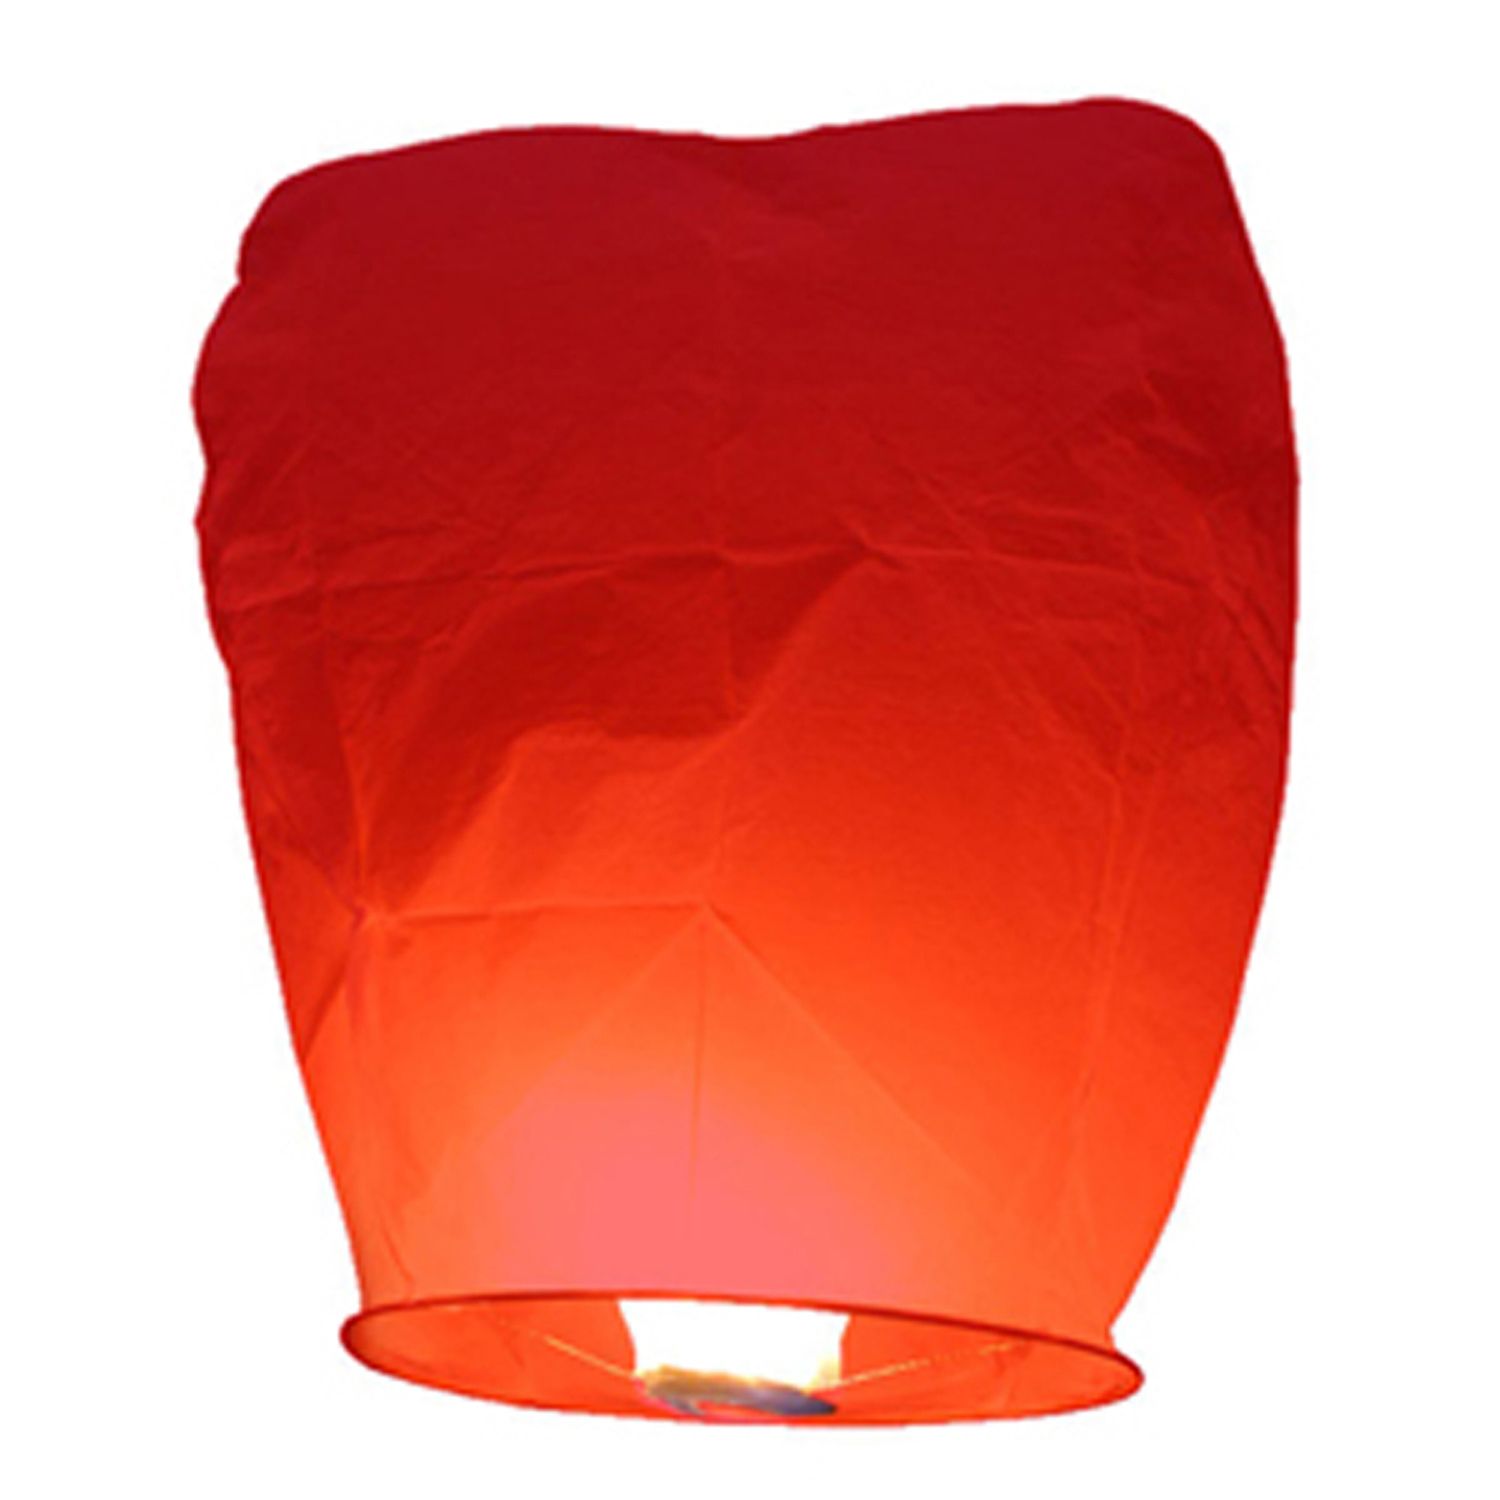 orange paper lanterns